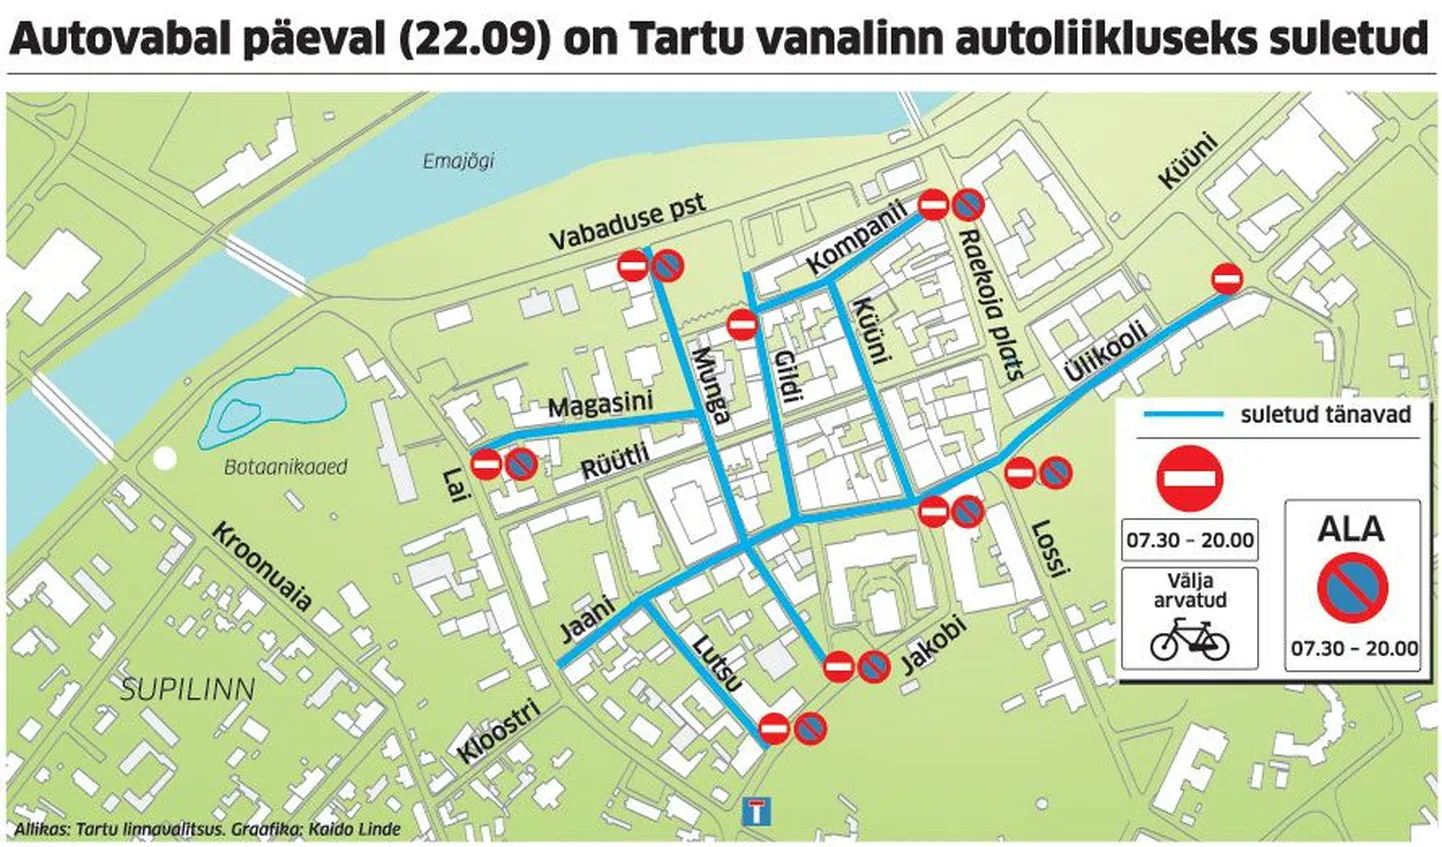 Autovabal päeval (22.09) on Tartu vanalinn autoliikluseks suletud.